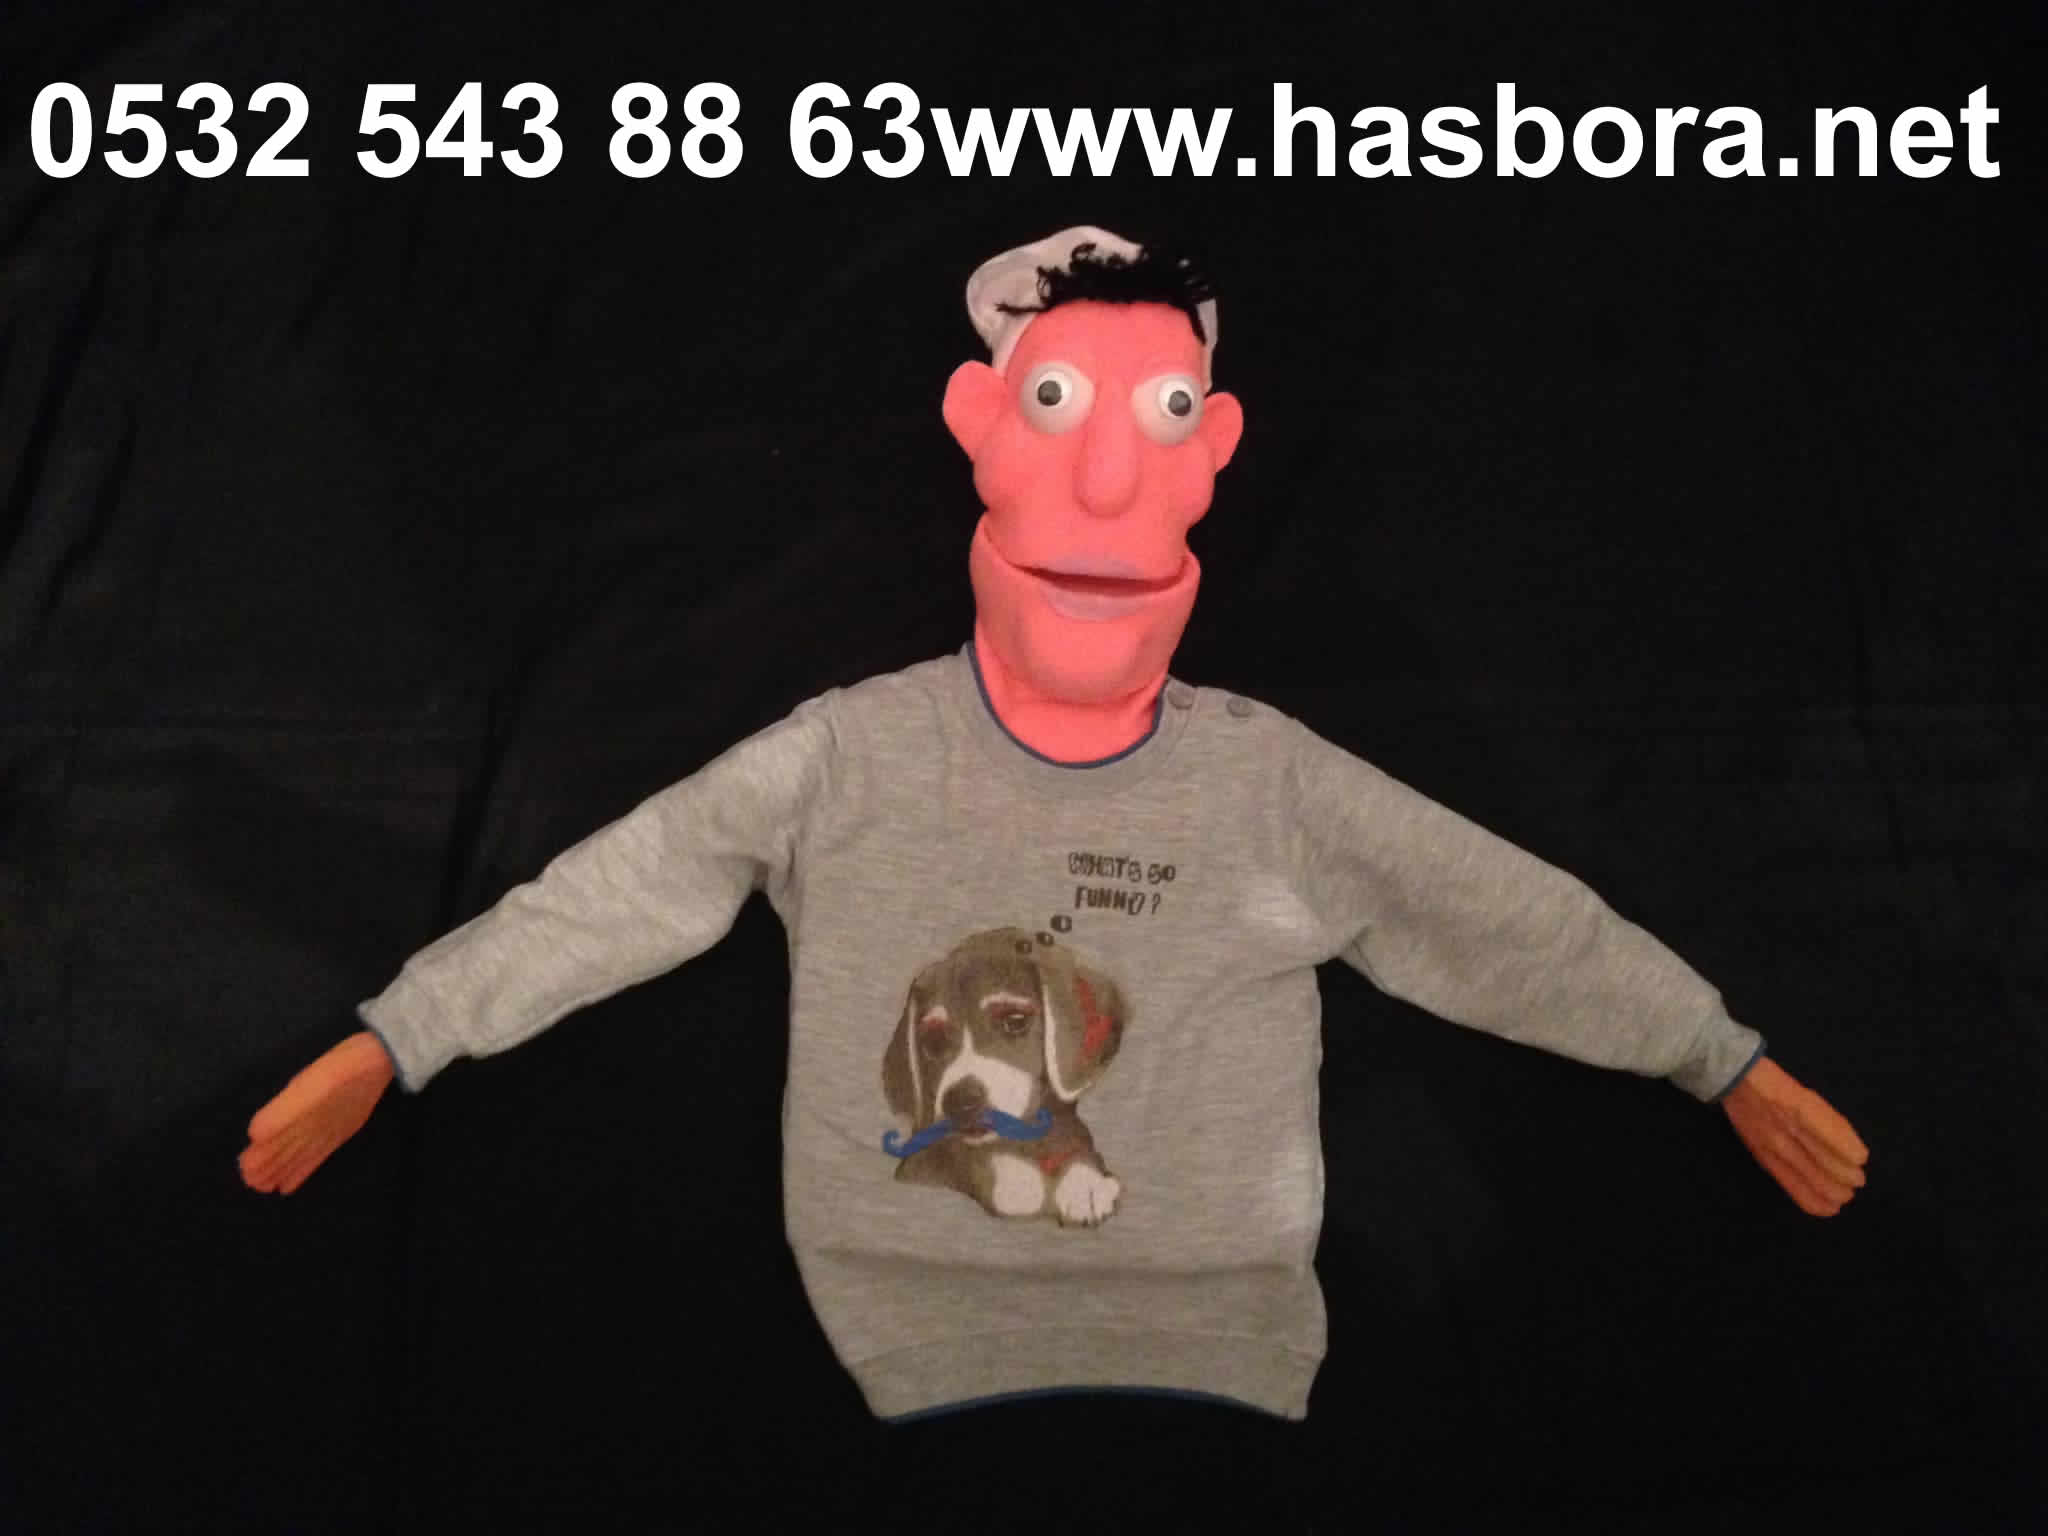 www.hasbora.net